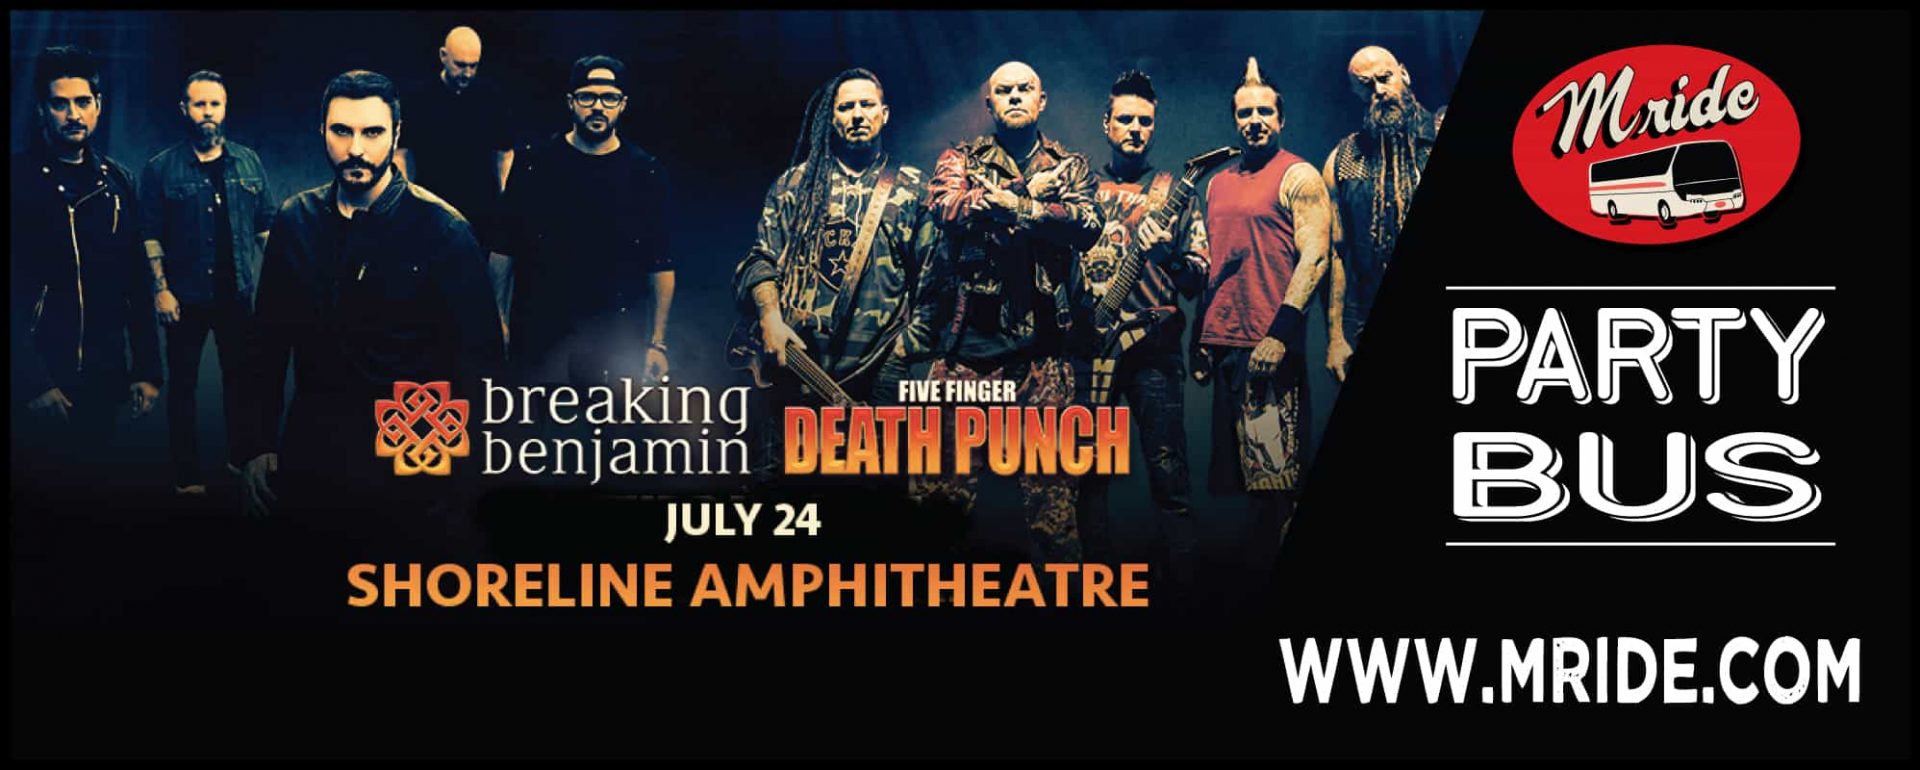 Breaking Benjamin & Five Finger Death Punch Concert